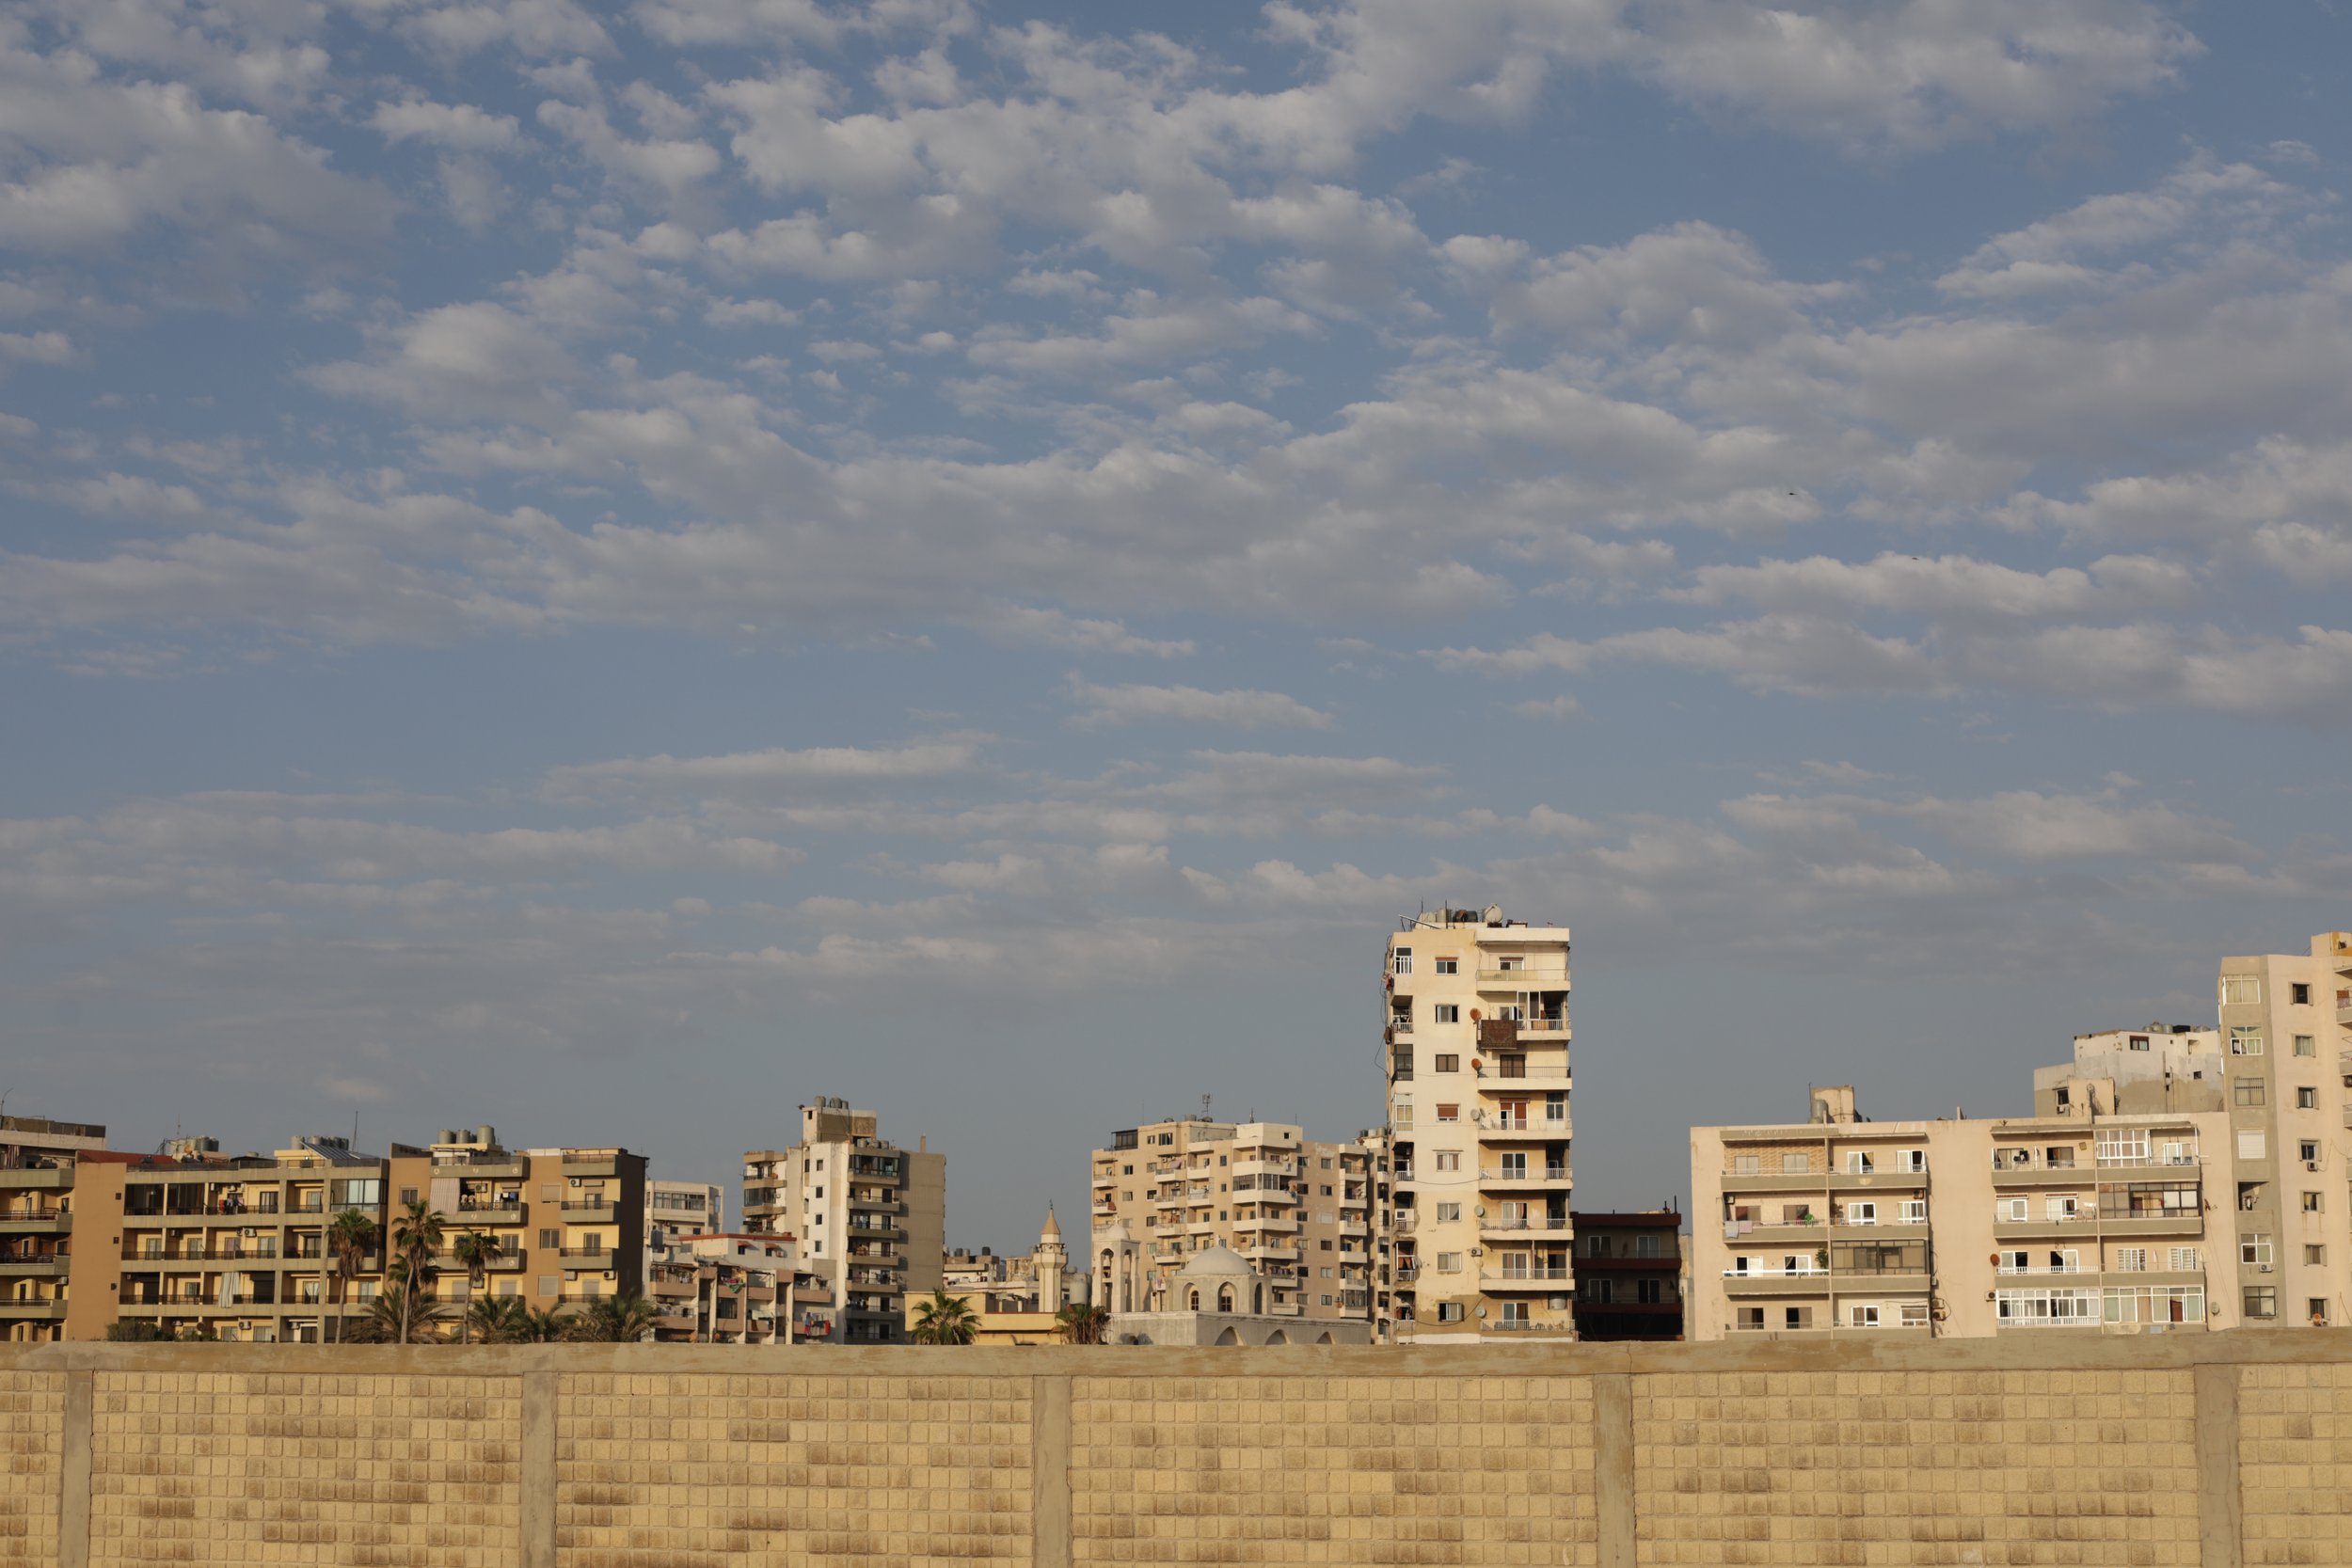 Tripoli, Lebanon skyline